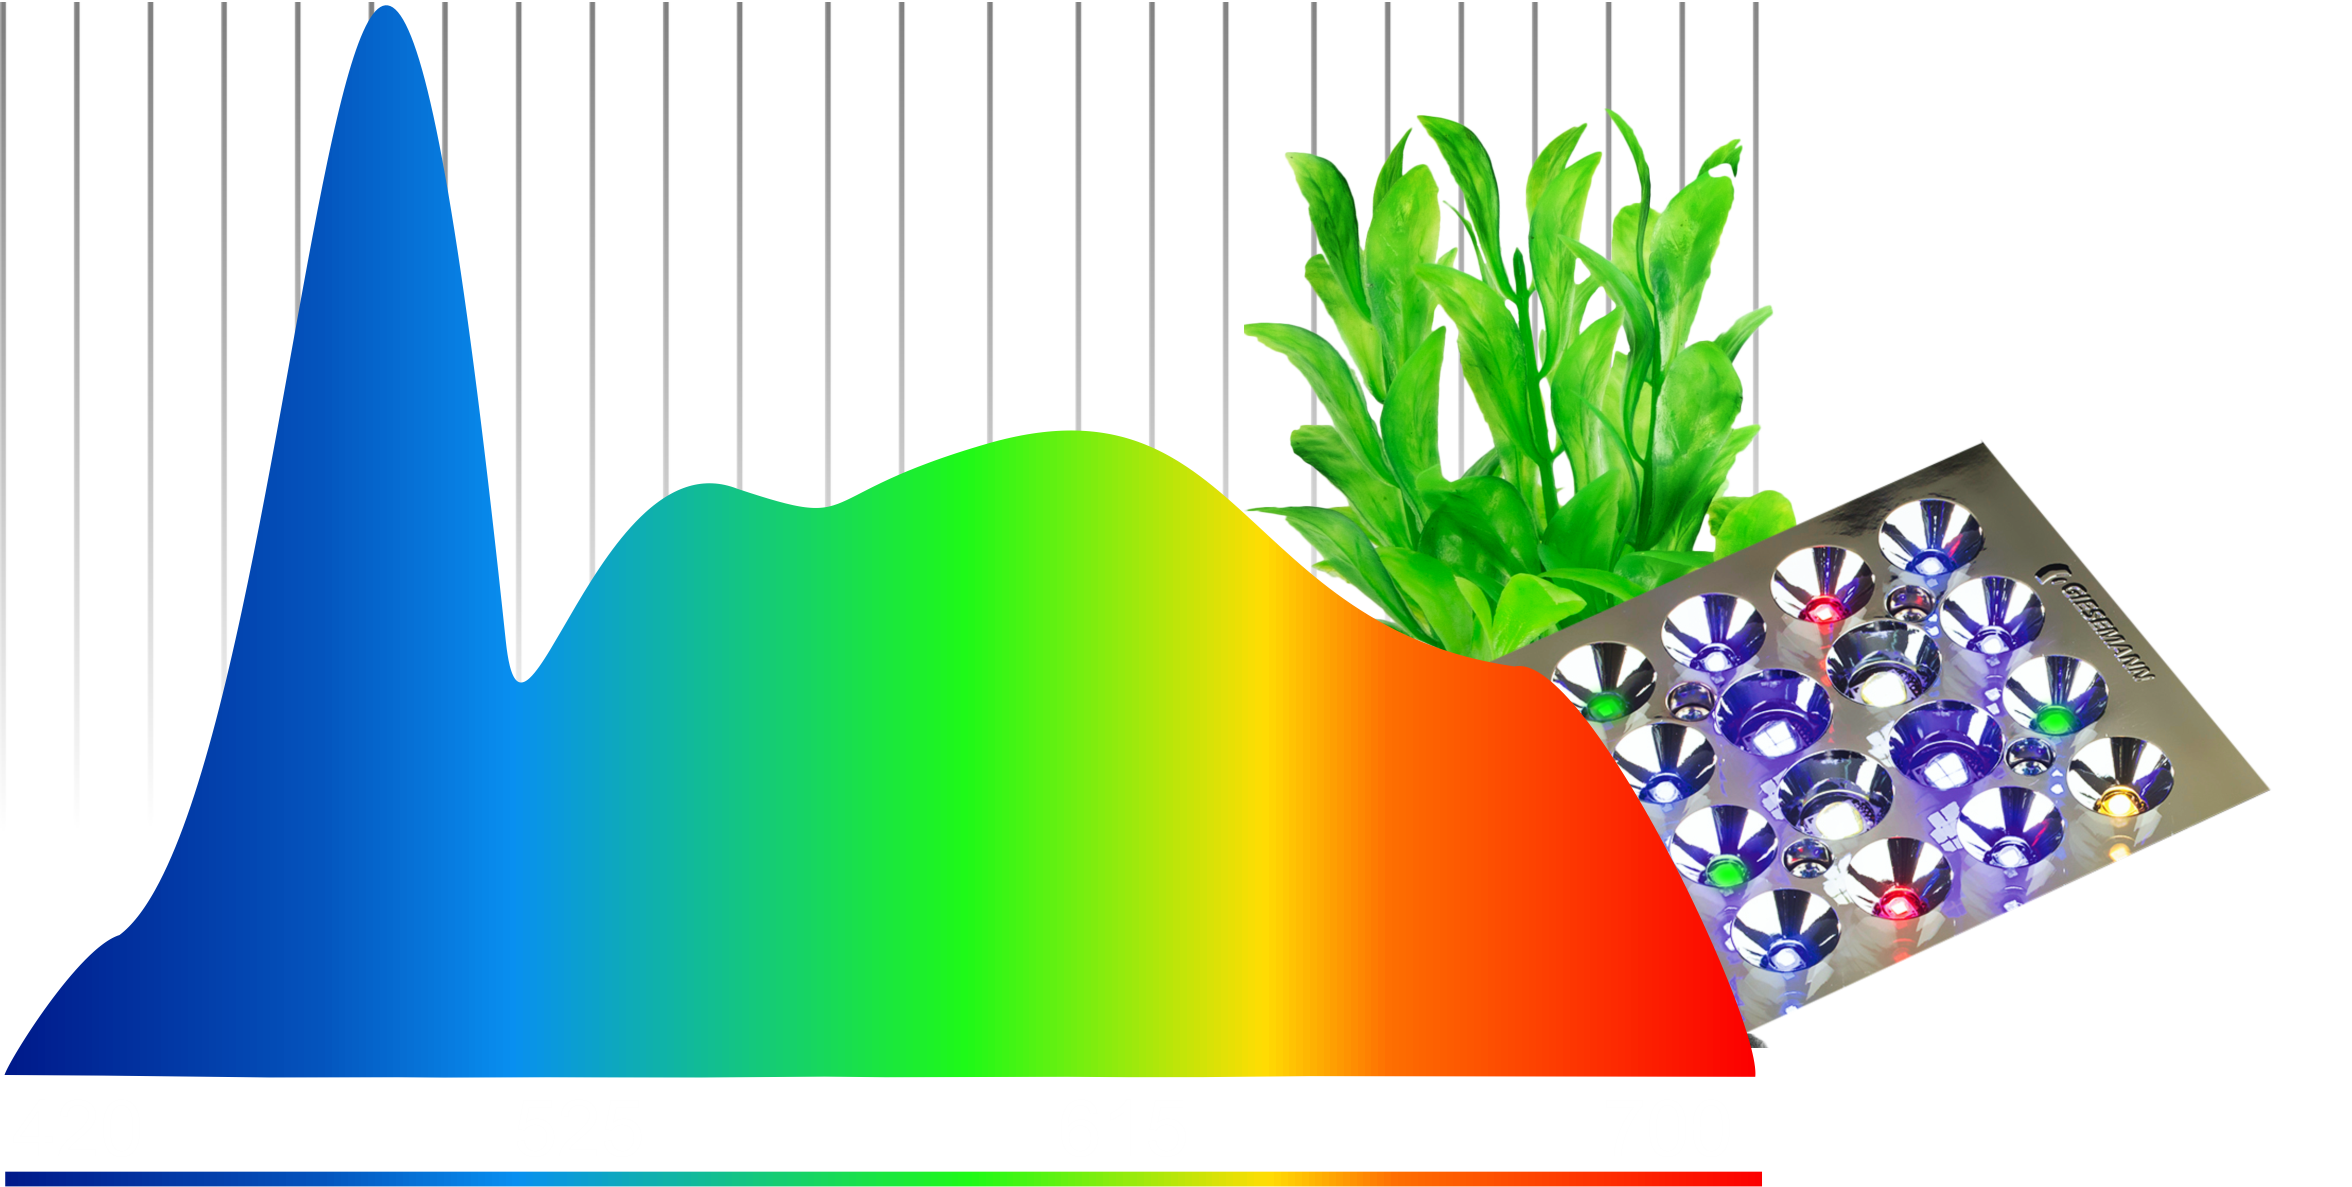 Farbspektrum tropic